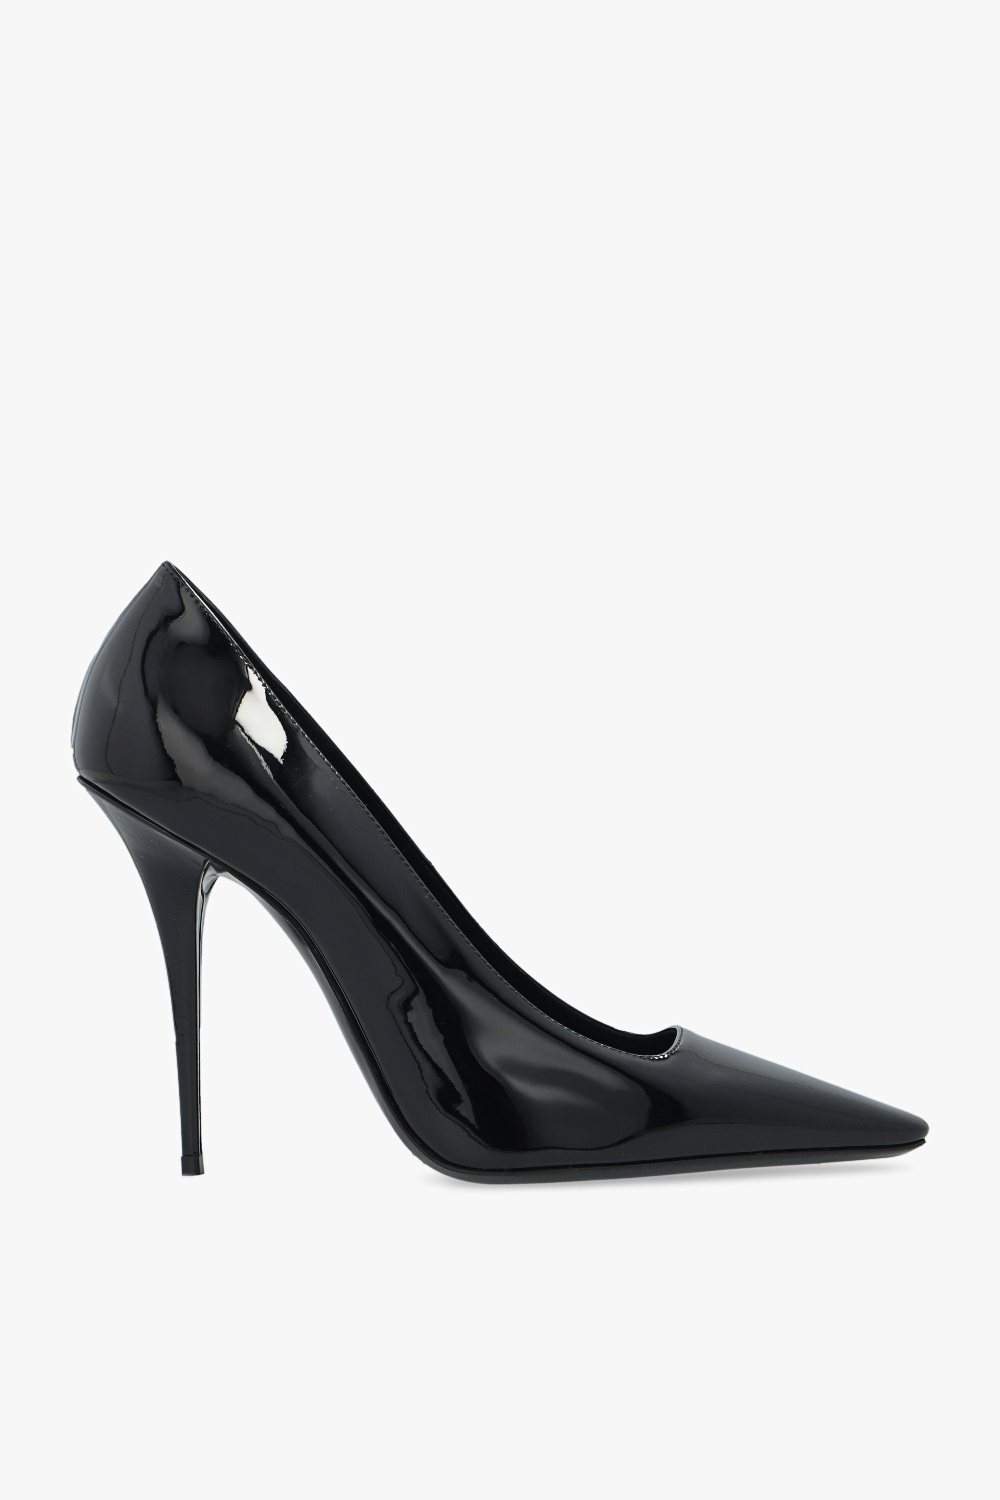 Saint Laurent 'Blade’ pumps | Women's Shoes | Vitkac